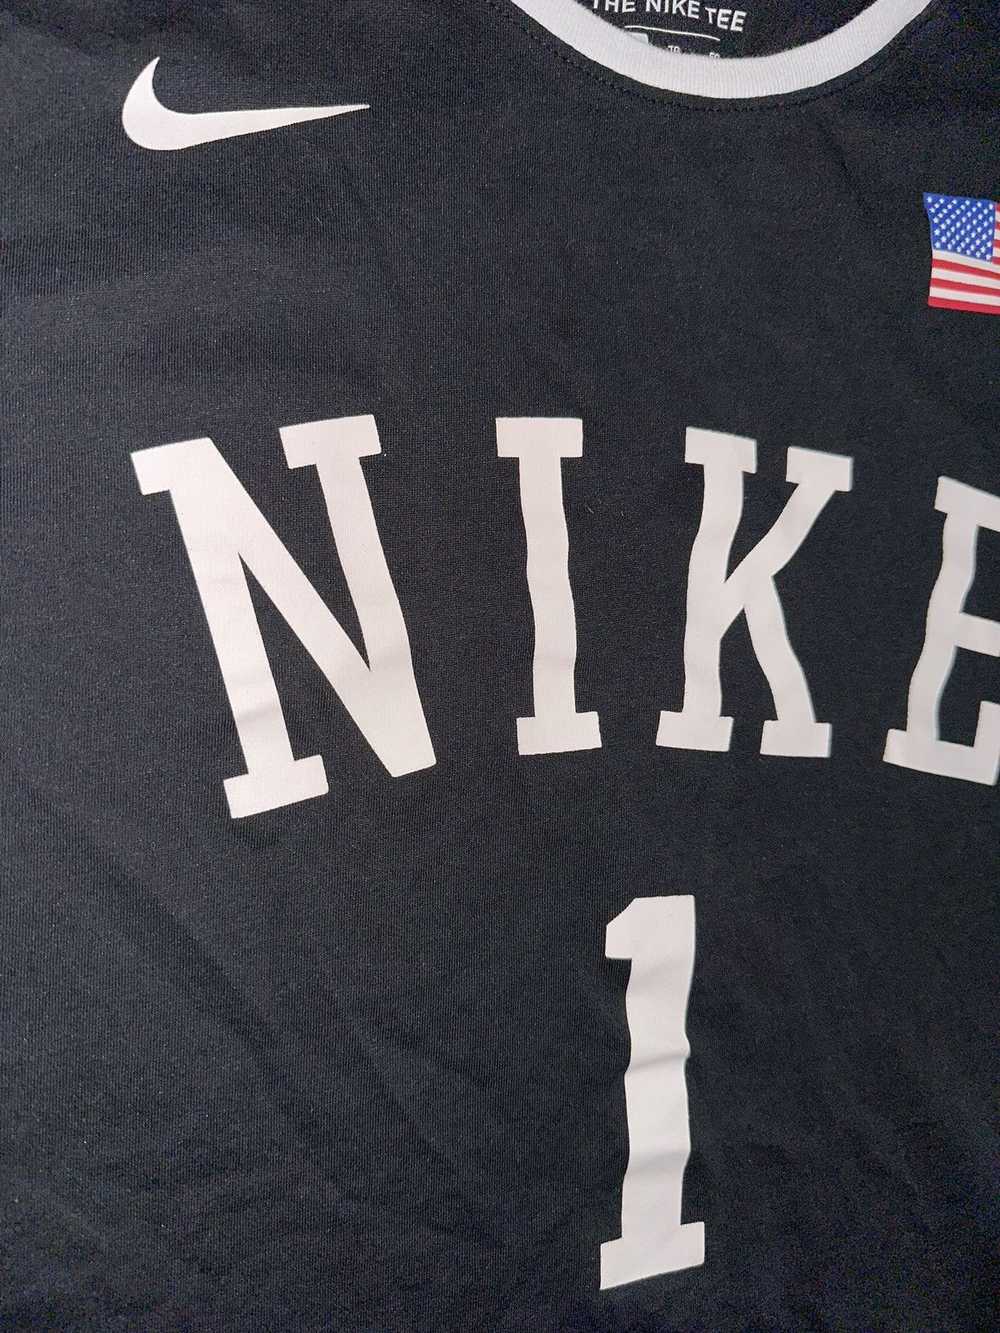 Nike Team USA basketball Nike shirt - image 4